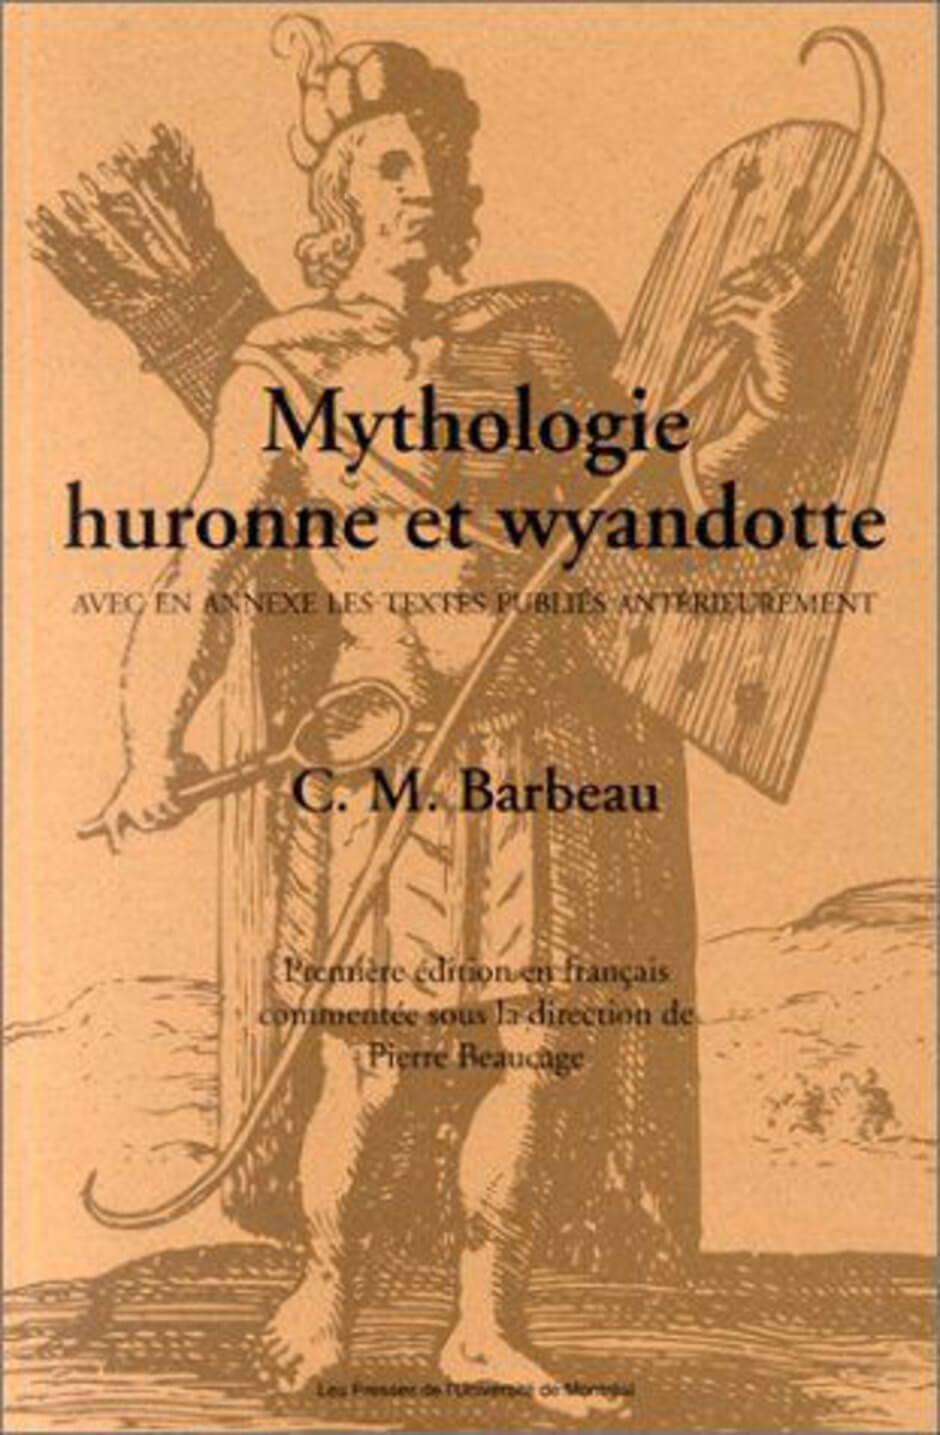 Art Canada Institute, Zacharie Vincent, Mythologie huronne et wyandotte by Marius Barbeau (Montreal: Presses de l’Université de Montréal, 1994).